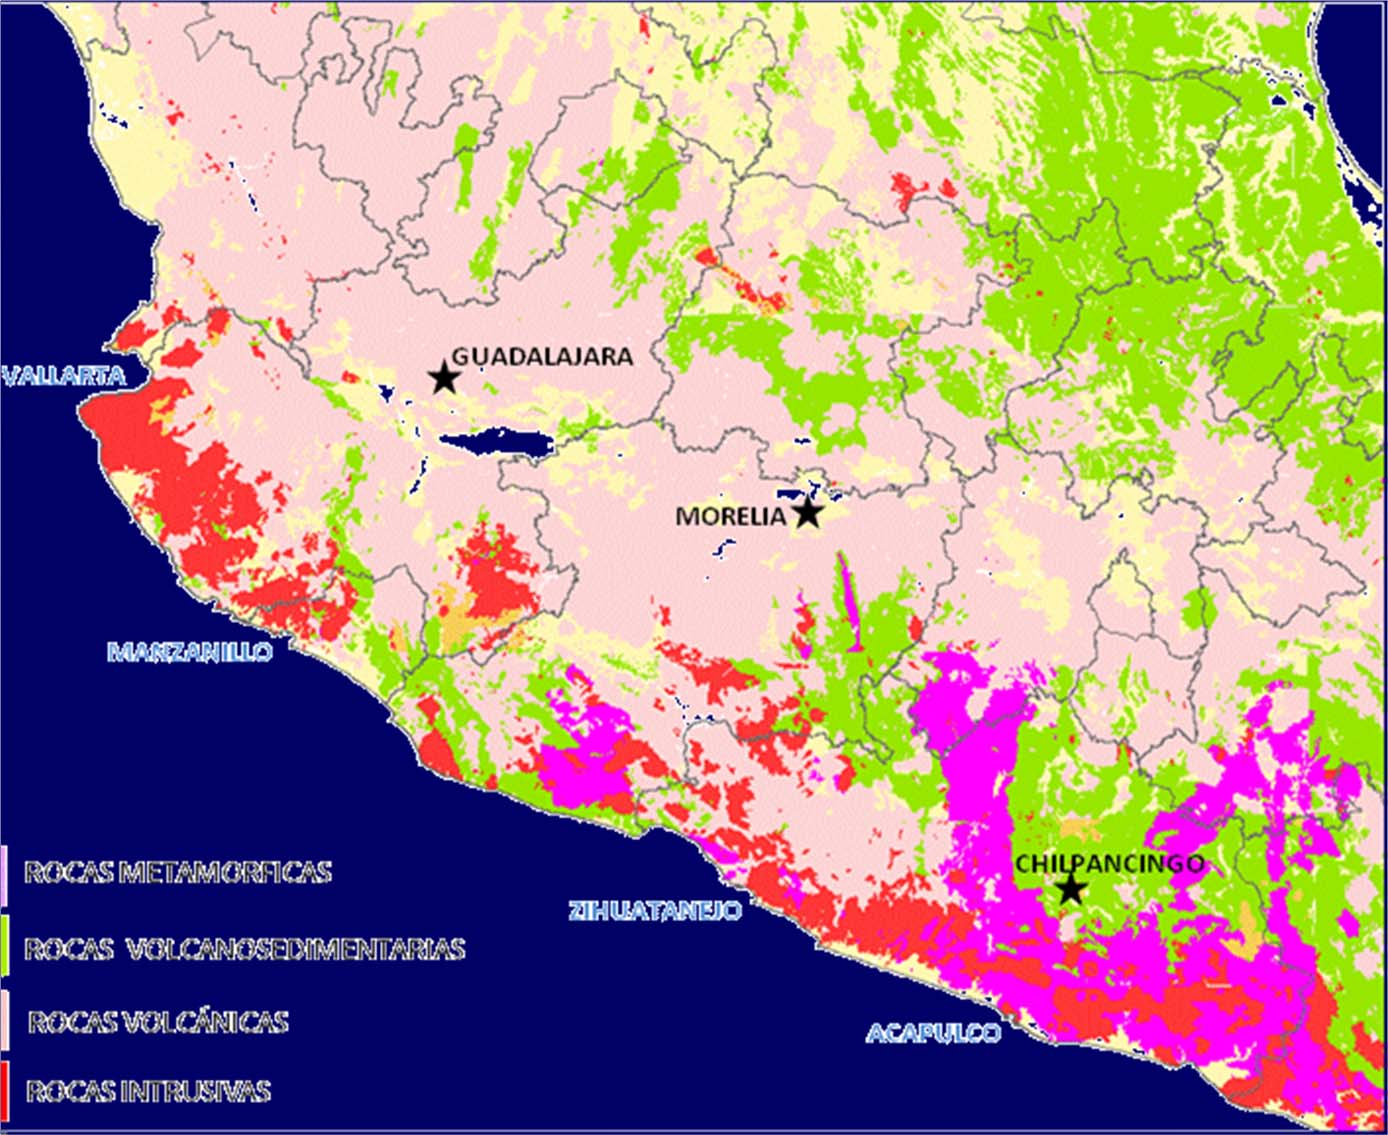 Geología de la Provincia Ferrífera del Suroccidente de México ROCAS METAMORFICAS ROCAS VOLCANOSEDIMENTARIAS Puerto Vallarta ROCAS VOLCÁNICAS ROCAS INTRUSIVAS ALUVIÓN